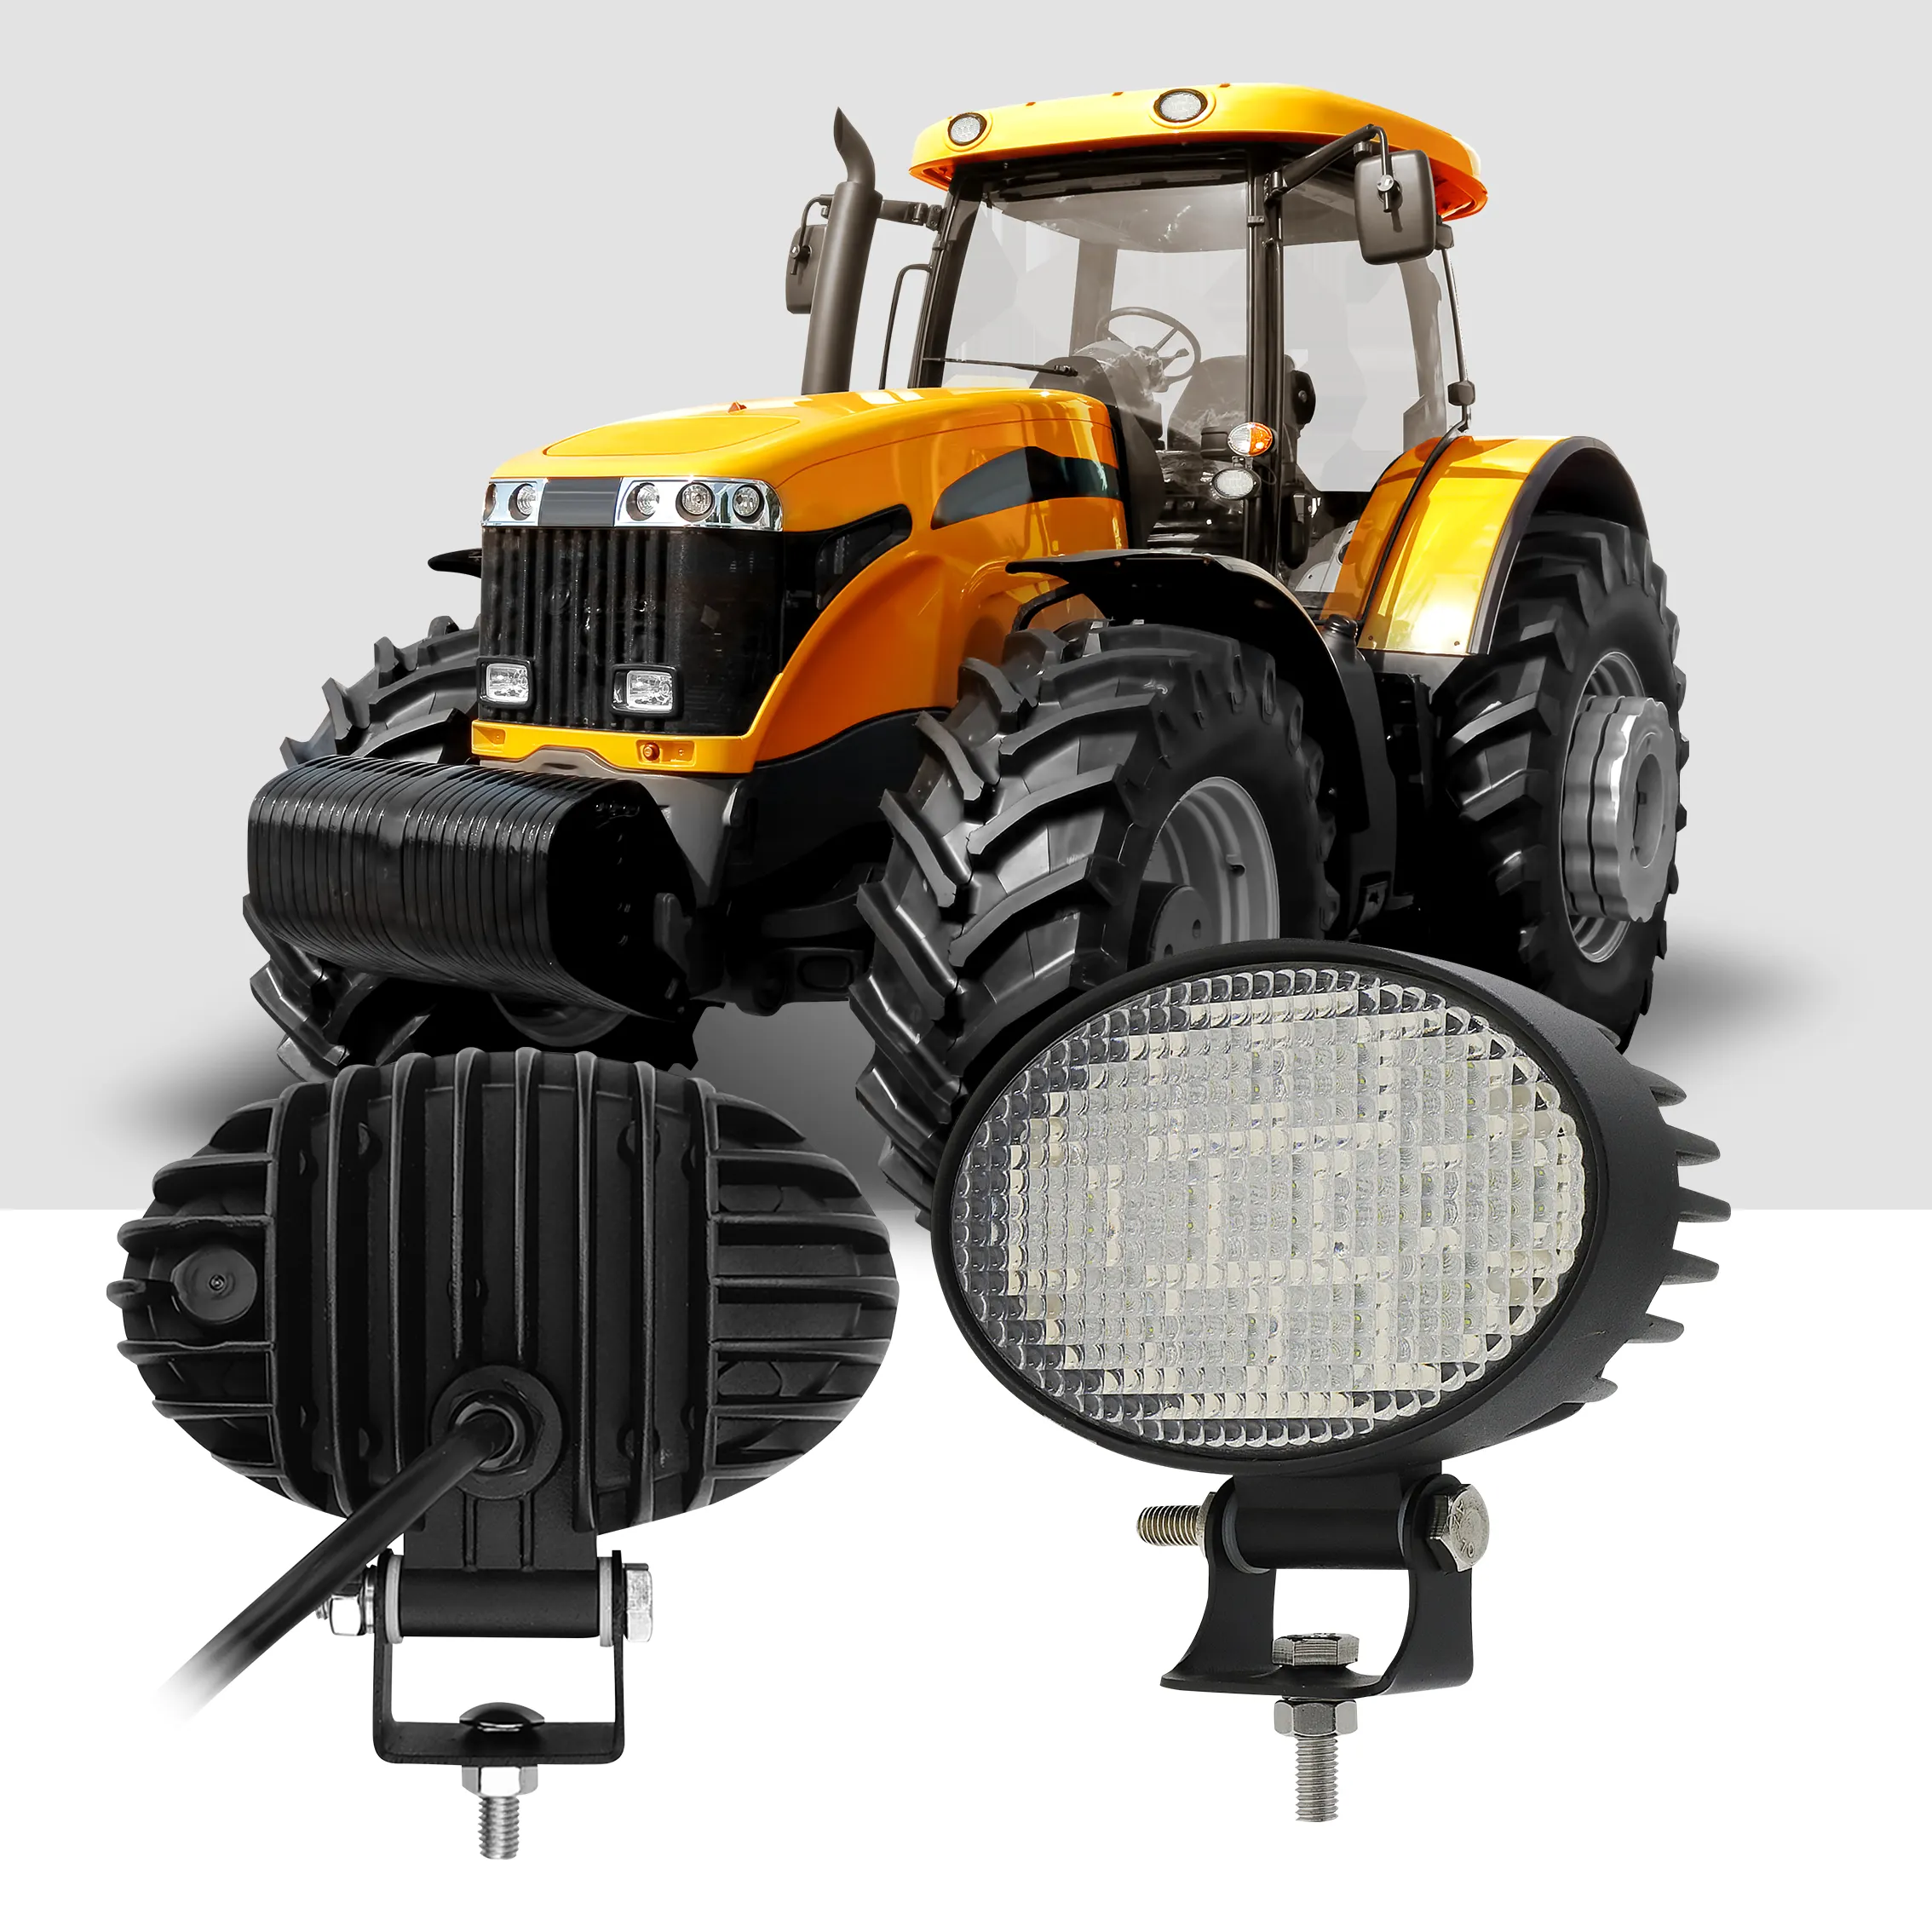 RoHS 승인 39W 농업 LED 작업 조명 홍수 스팟 빔 5.6 "타원형 트랙터 조명